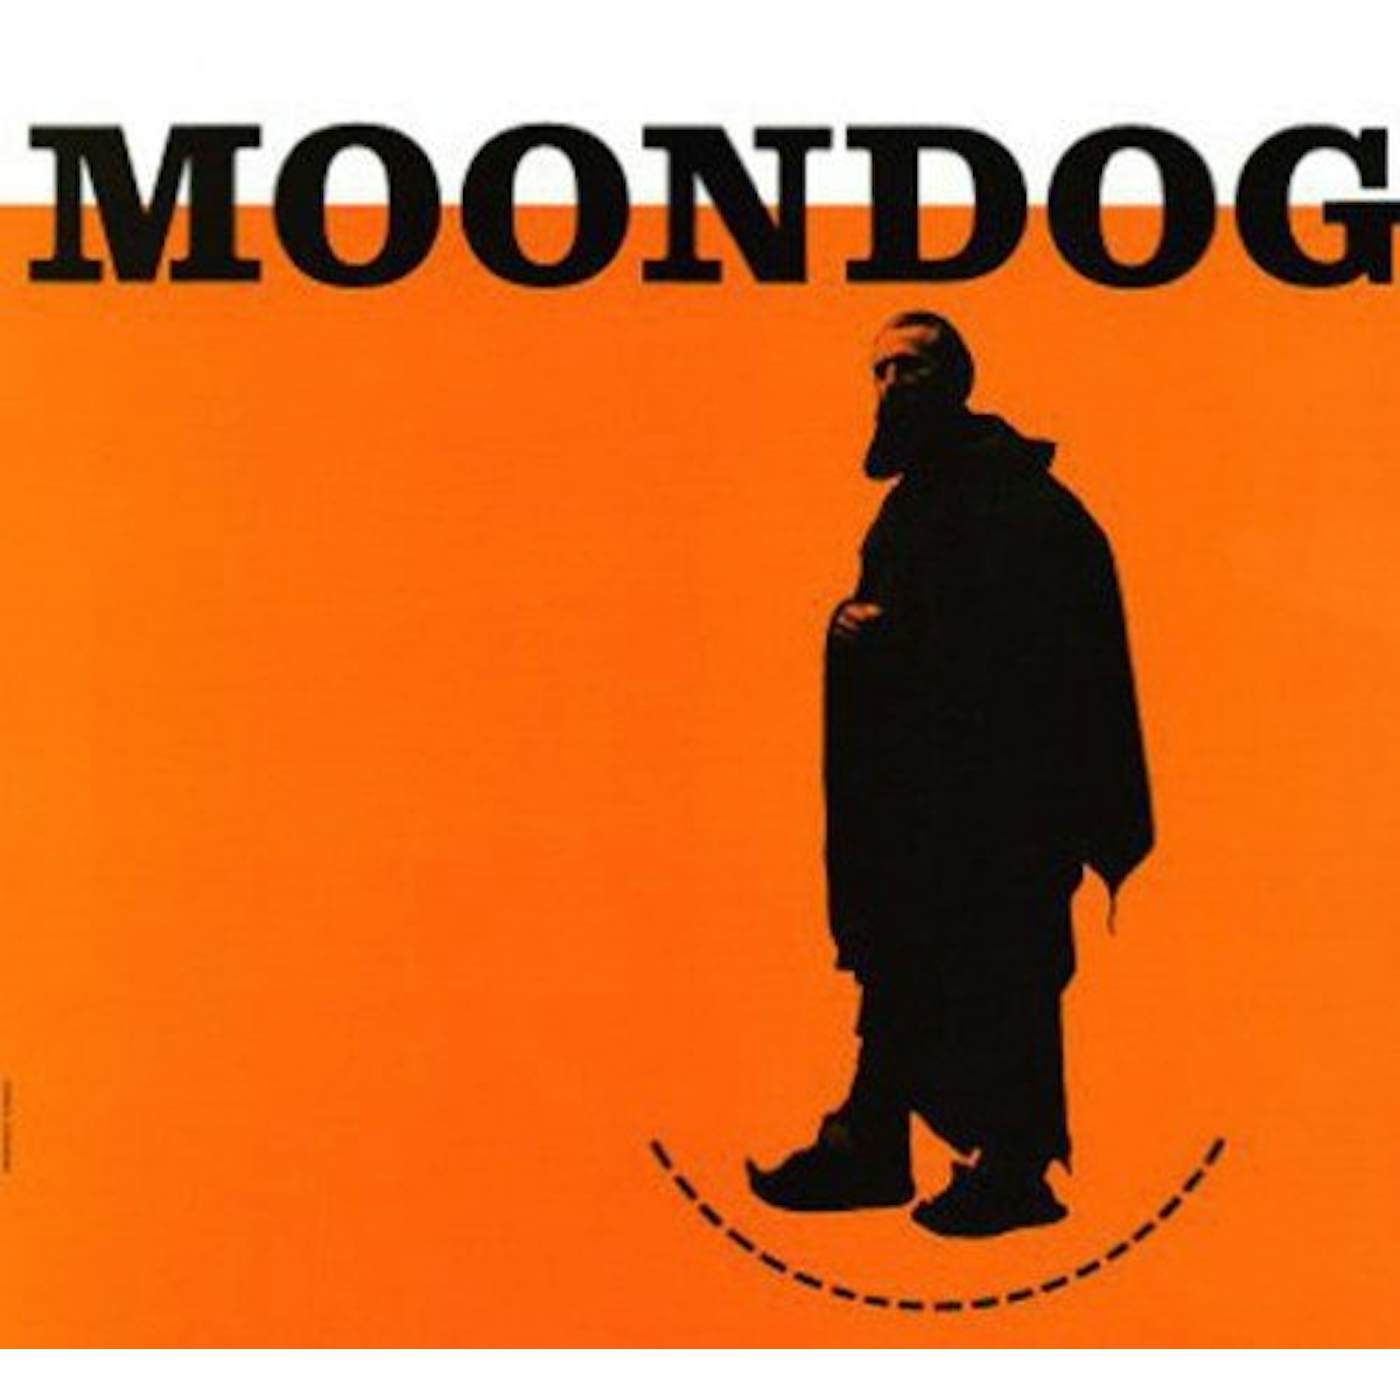 Moondog Vinyl Record